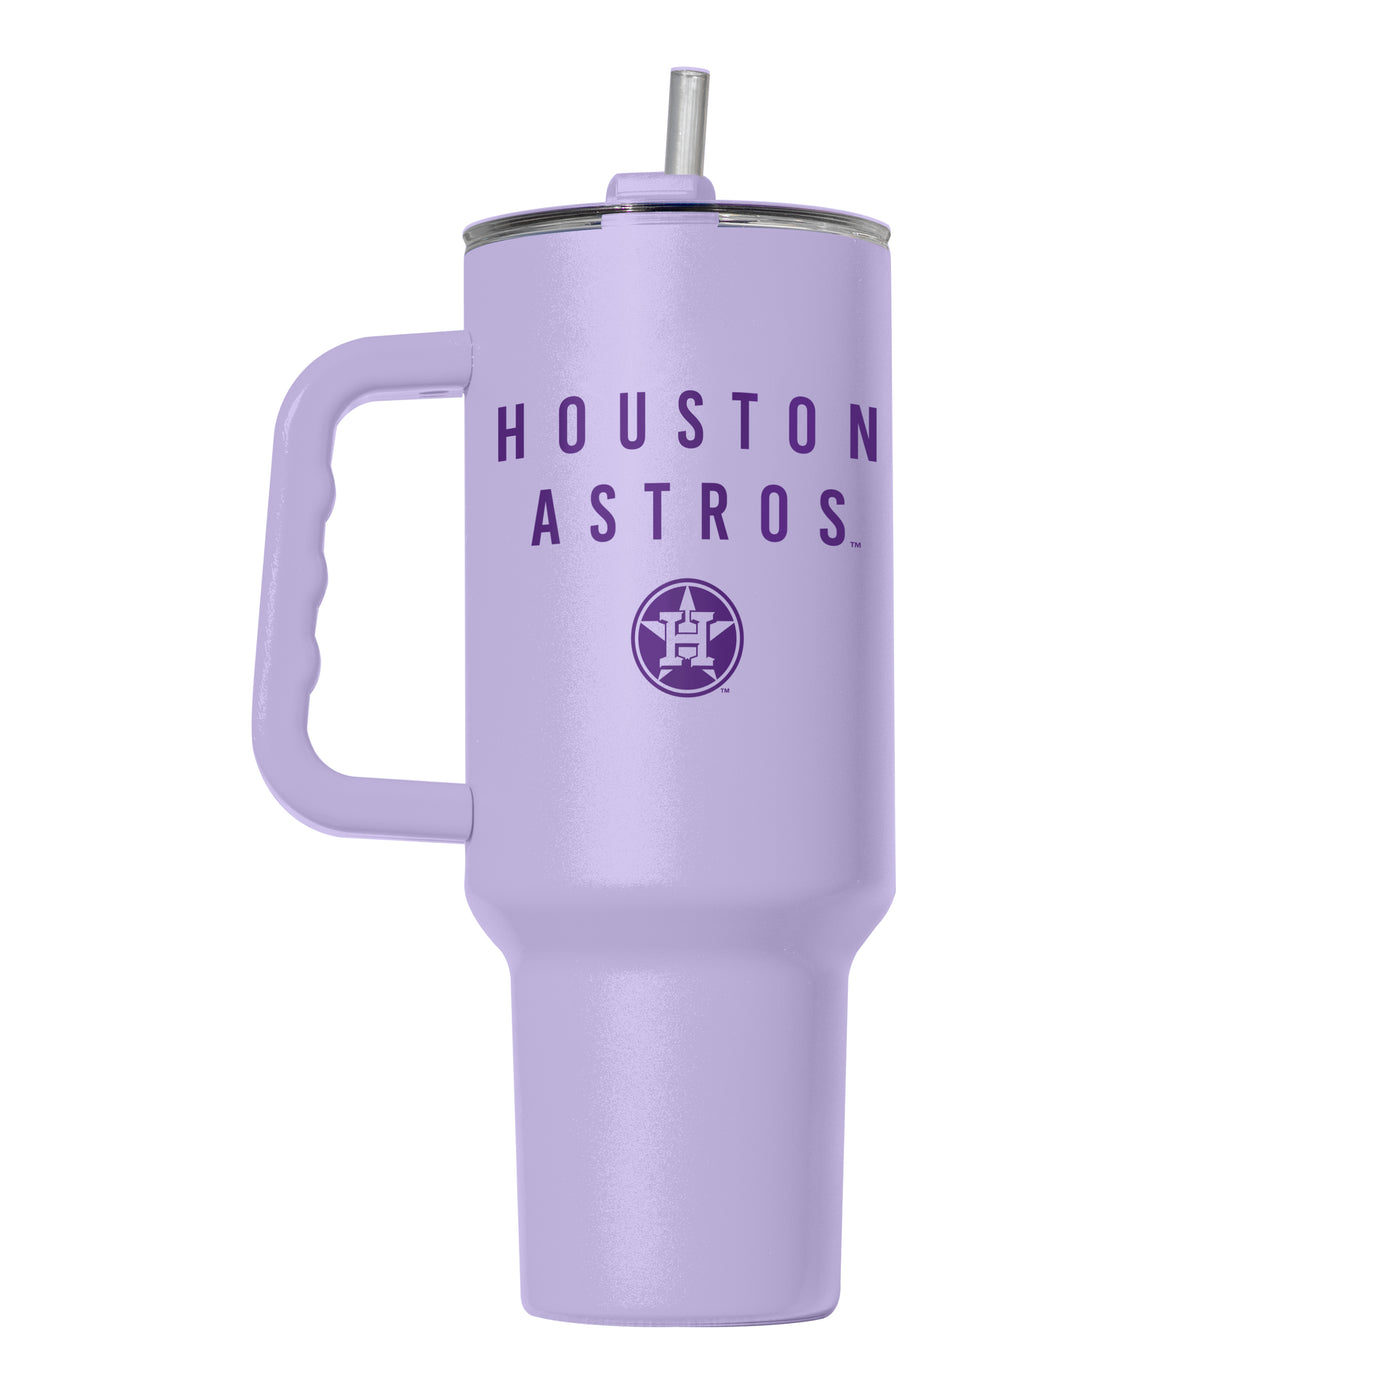 Houston Astros 40oz Tonal Powder Coat Tumbler